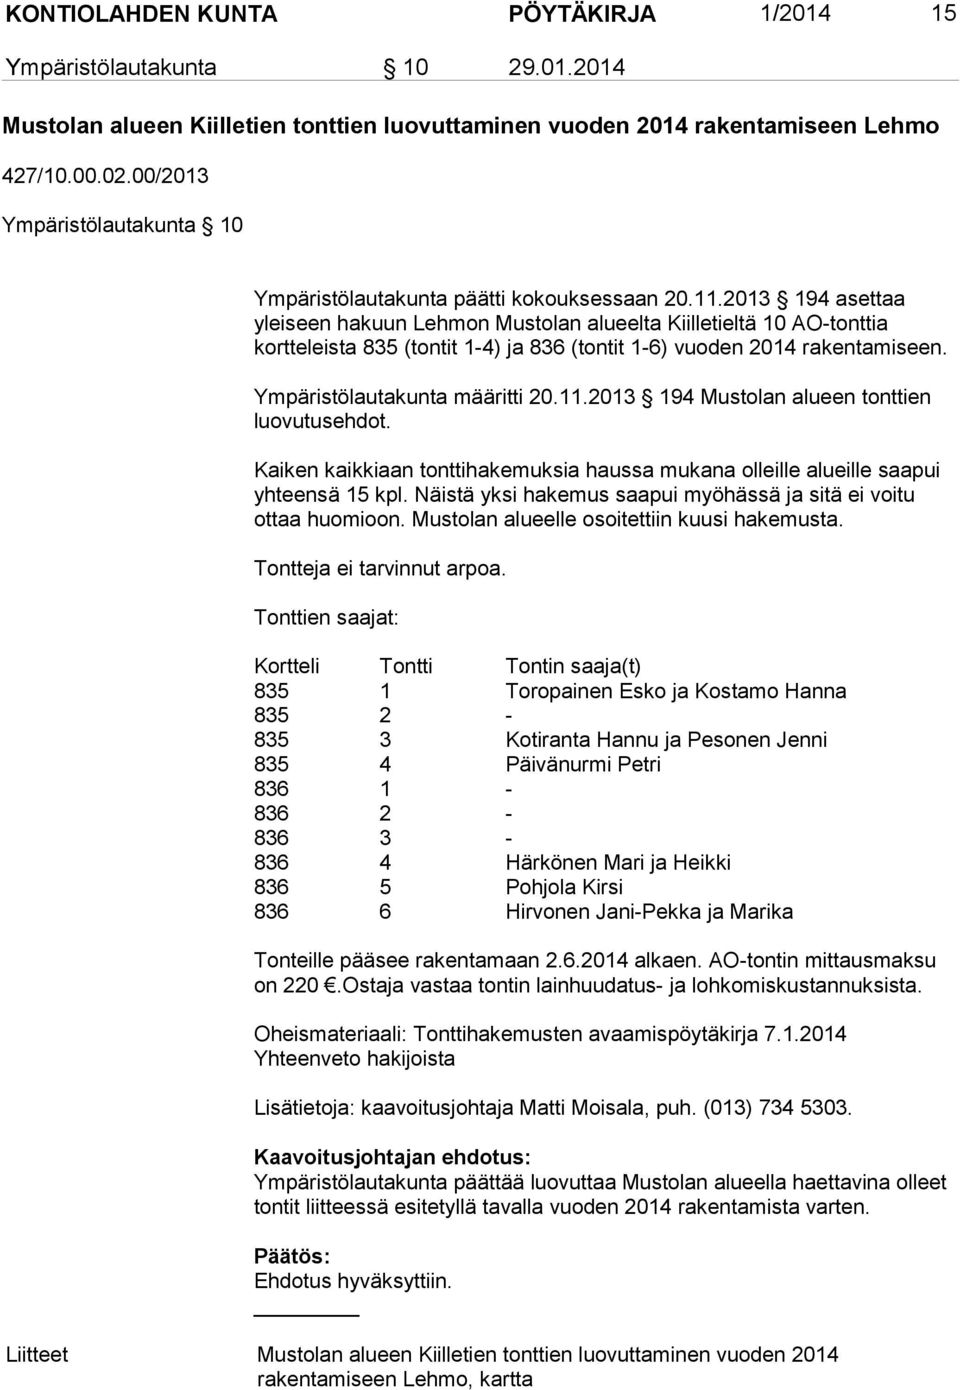 2013 194 asettaa yleiseen hakuun Lehmon Mustolan alueelta Kiilletieltä 10 AO-tonttia kortteleista 835 (tontit 1-4) ja 836 (tontit 1-6) vuoden 2014 rakentamiseen. Ympäristölautakunta määritti 20.11.